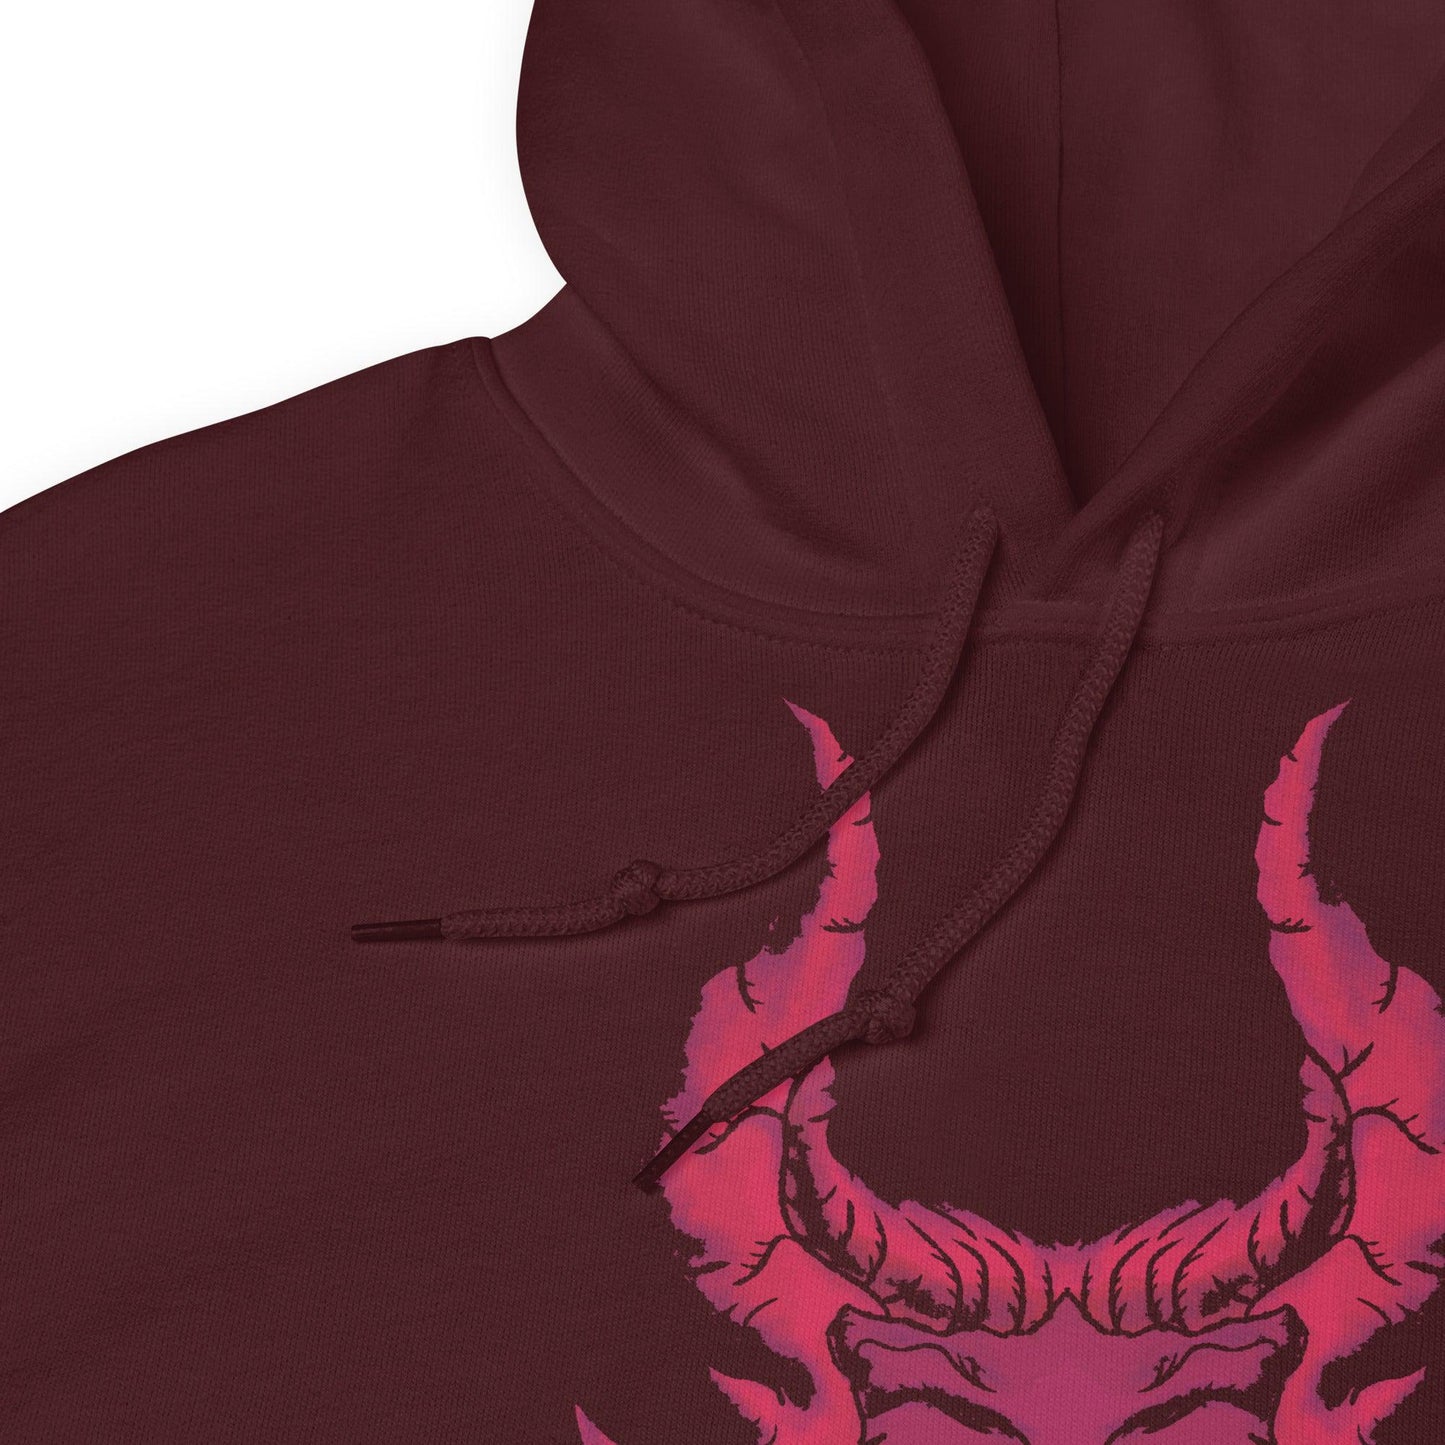 Red Dragon Head Hoodie (Unisex)